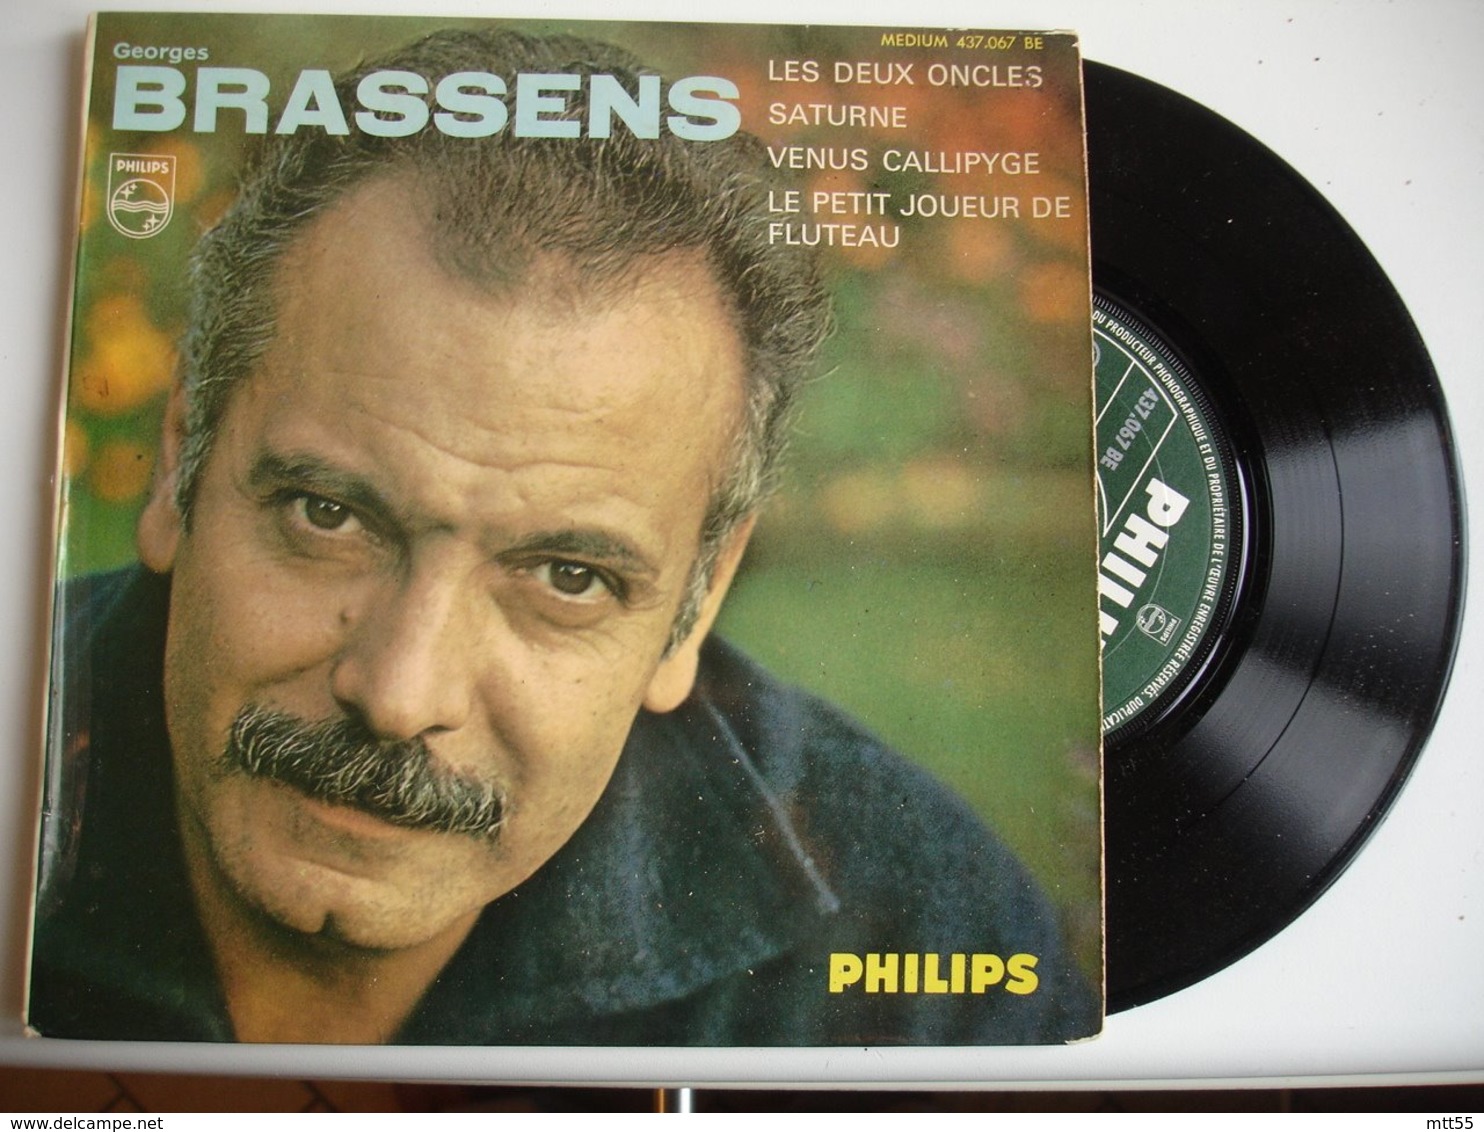 Georges Brassens Lot 3 Disque Vinyle 45 Tours T 2 Oncles Le Cocu - 45 Rpm - Maxi-Singles